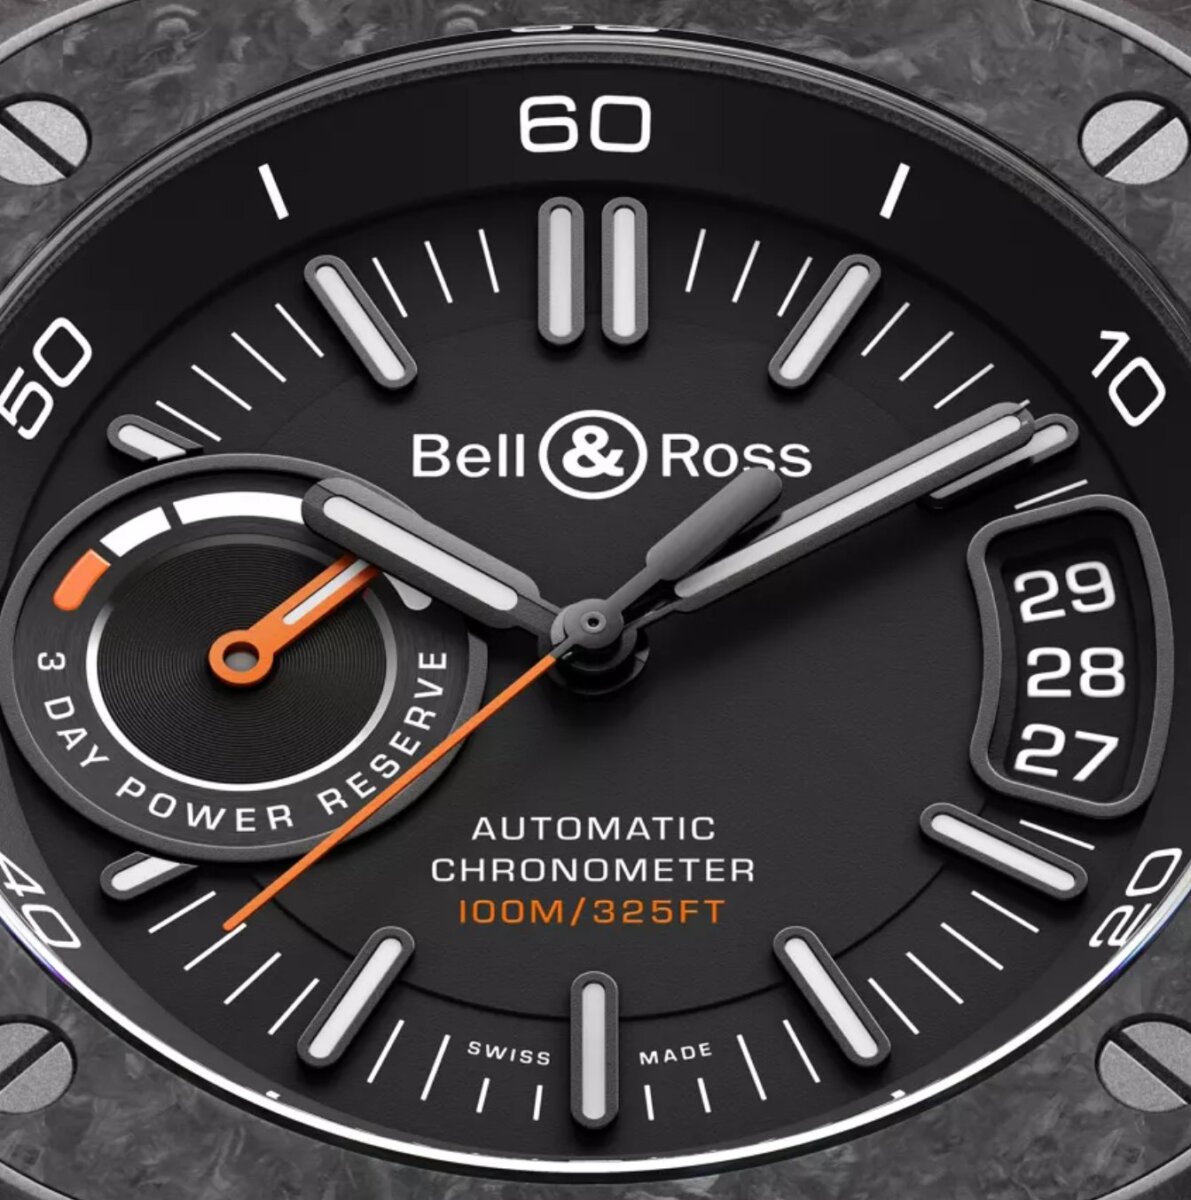 【ベル&ロス】生産本数が少ない貴重なモデル？「BR-X5 カーボン オレンジ」唯一無二のデザイン-BELL&ROSS -5719439391bb99001edeb09adeda0f1a